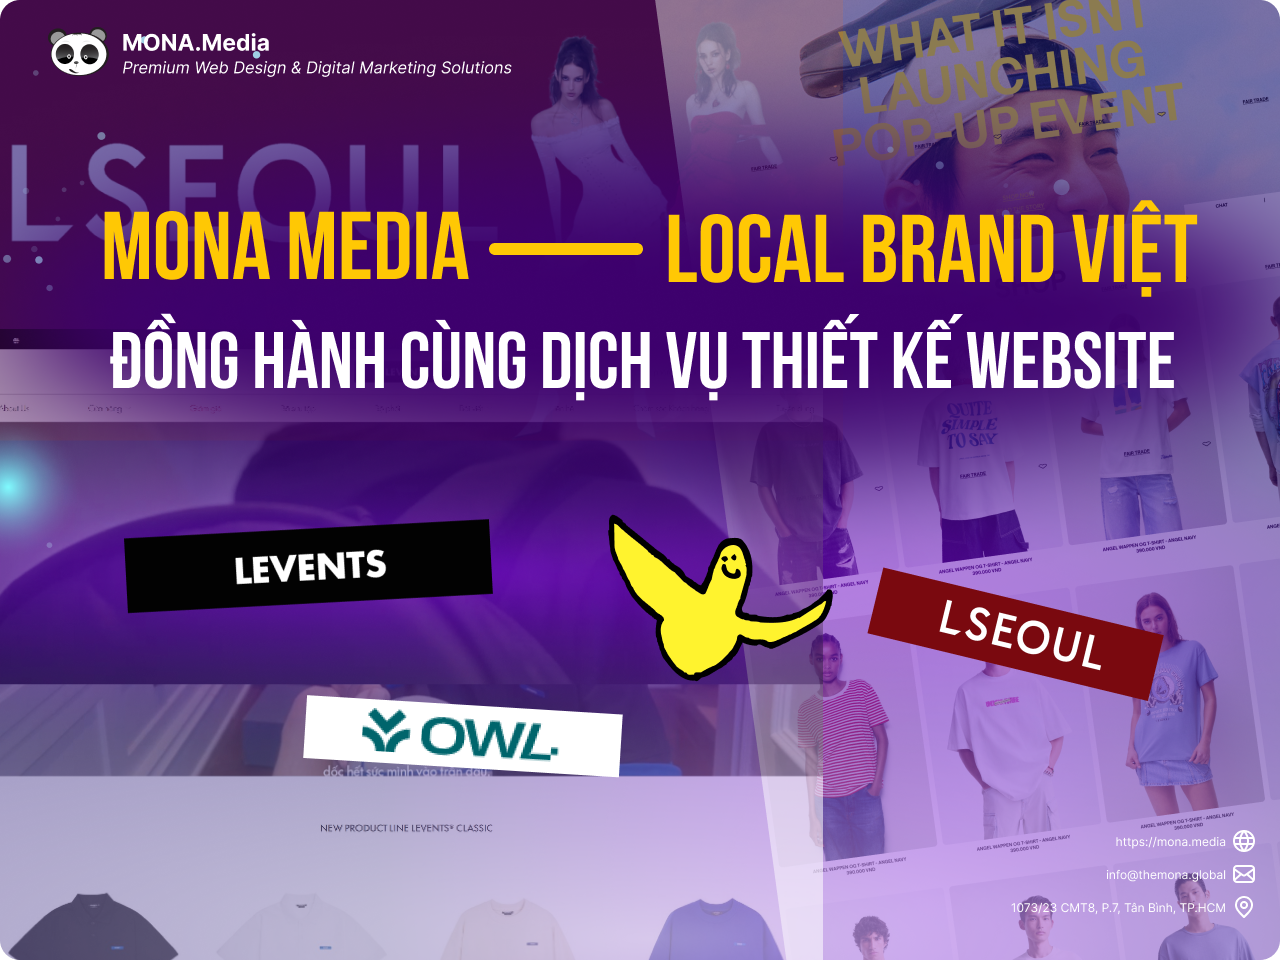 MONA vinh hạnh đồng hành cùng Local Brand Việt